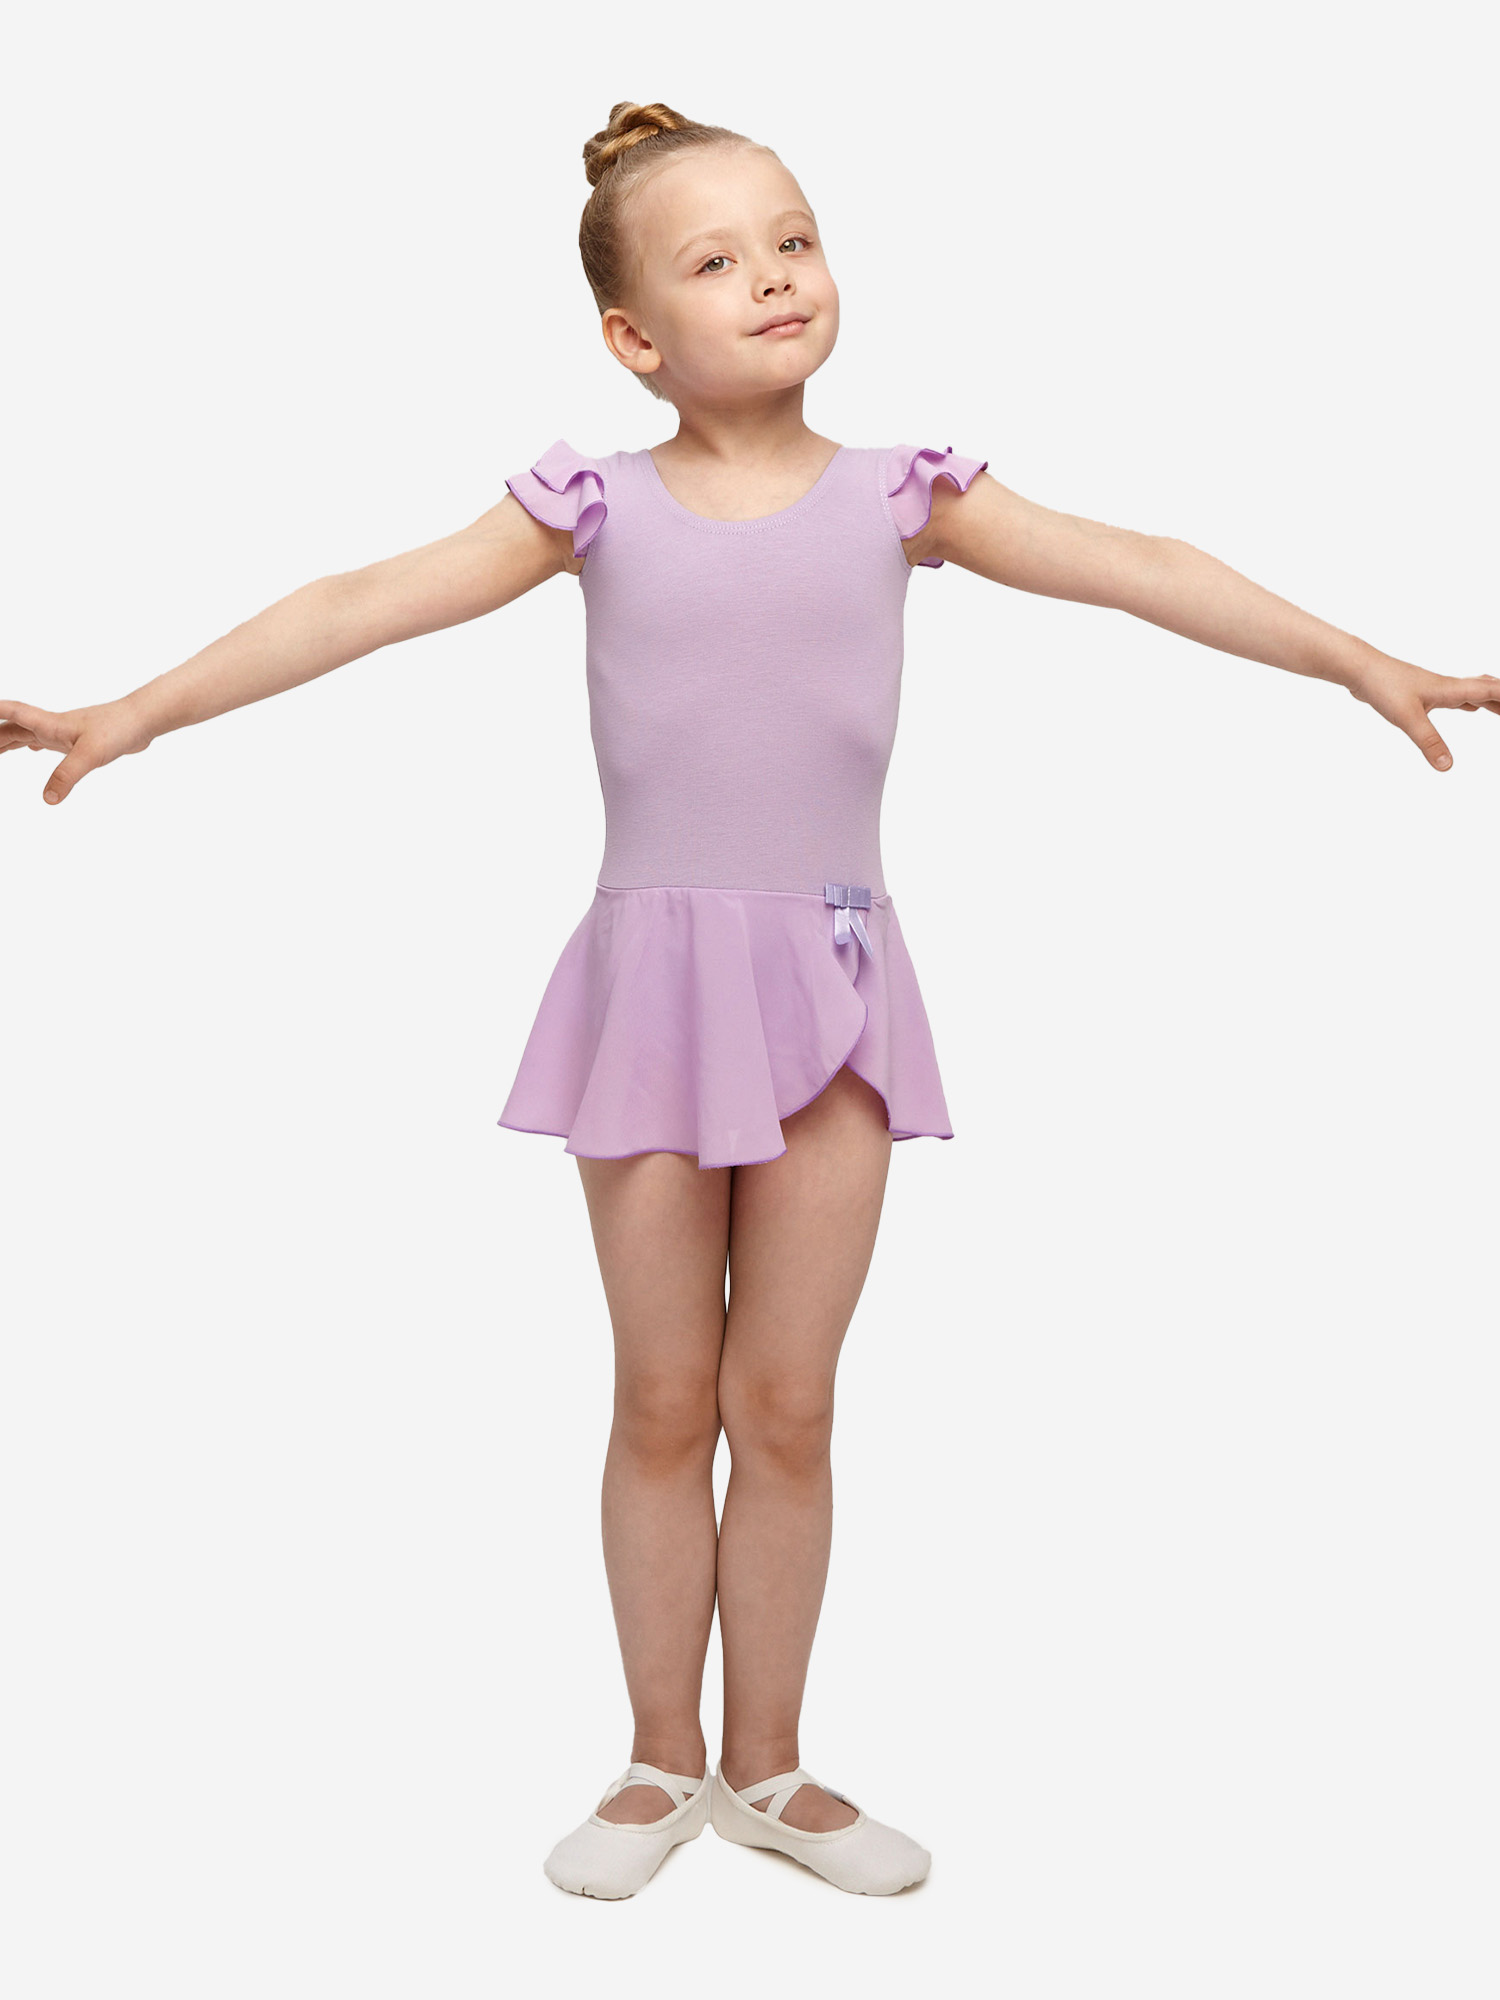 Купальник гимнастический Belkina с юбкой для танцев и тренировок, Фиолетовый купальник гимнастический belkina с юбкой пачкой для выступлений красный